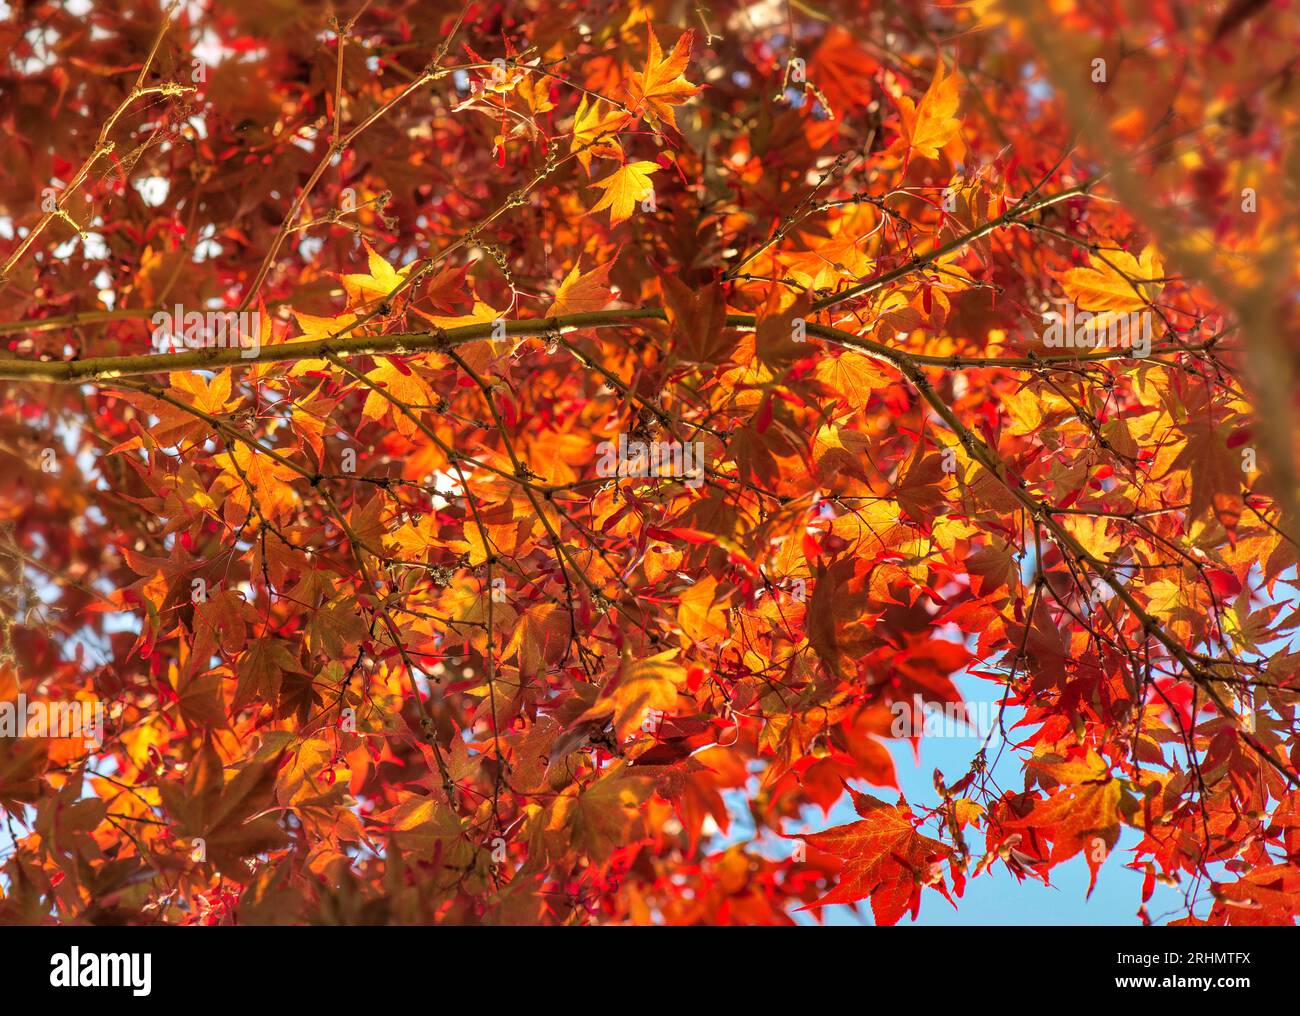 Nahaufnahme auf wunderschönem roten Blatt eines japanischen Ahornbaums in sonnigem Licht - herbstlicher Hintergrund Stockfoto